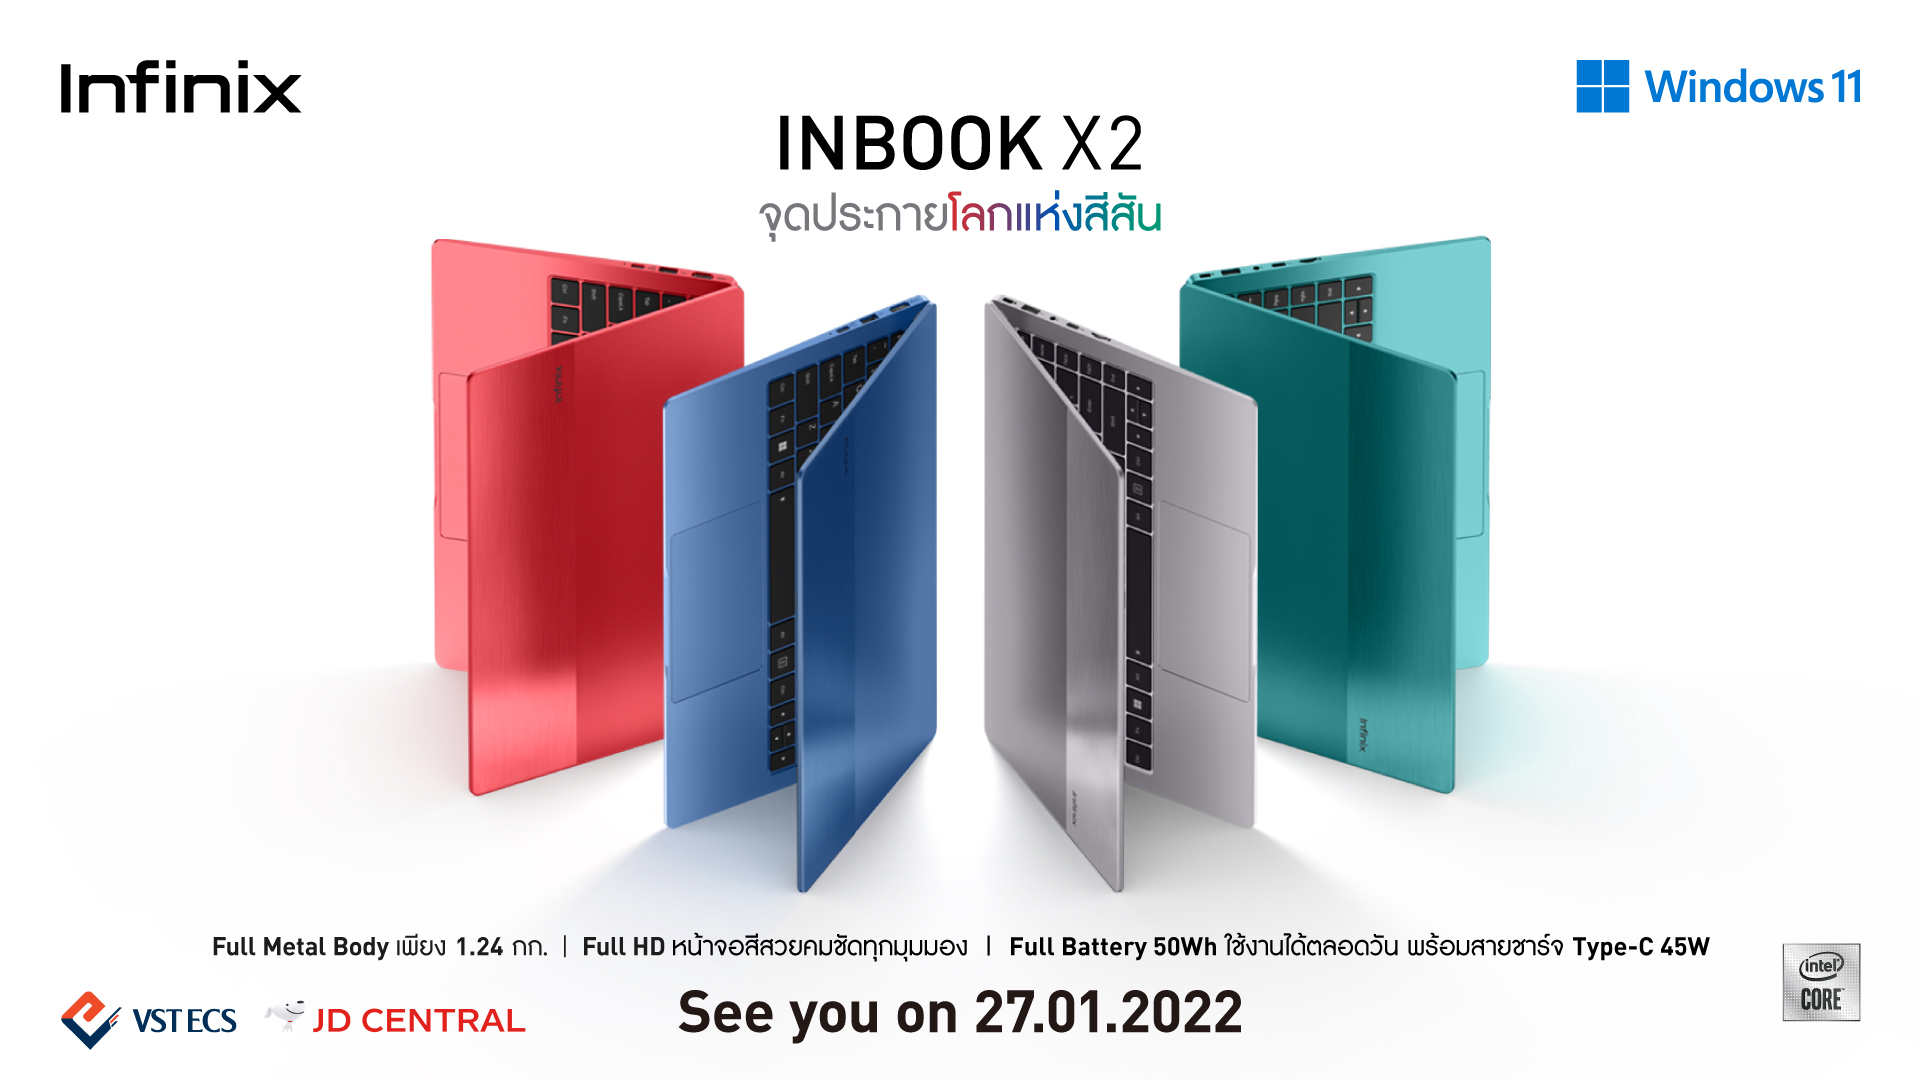 INBOOK X2 infinix